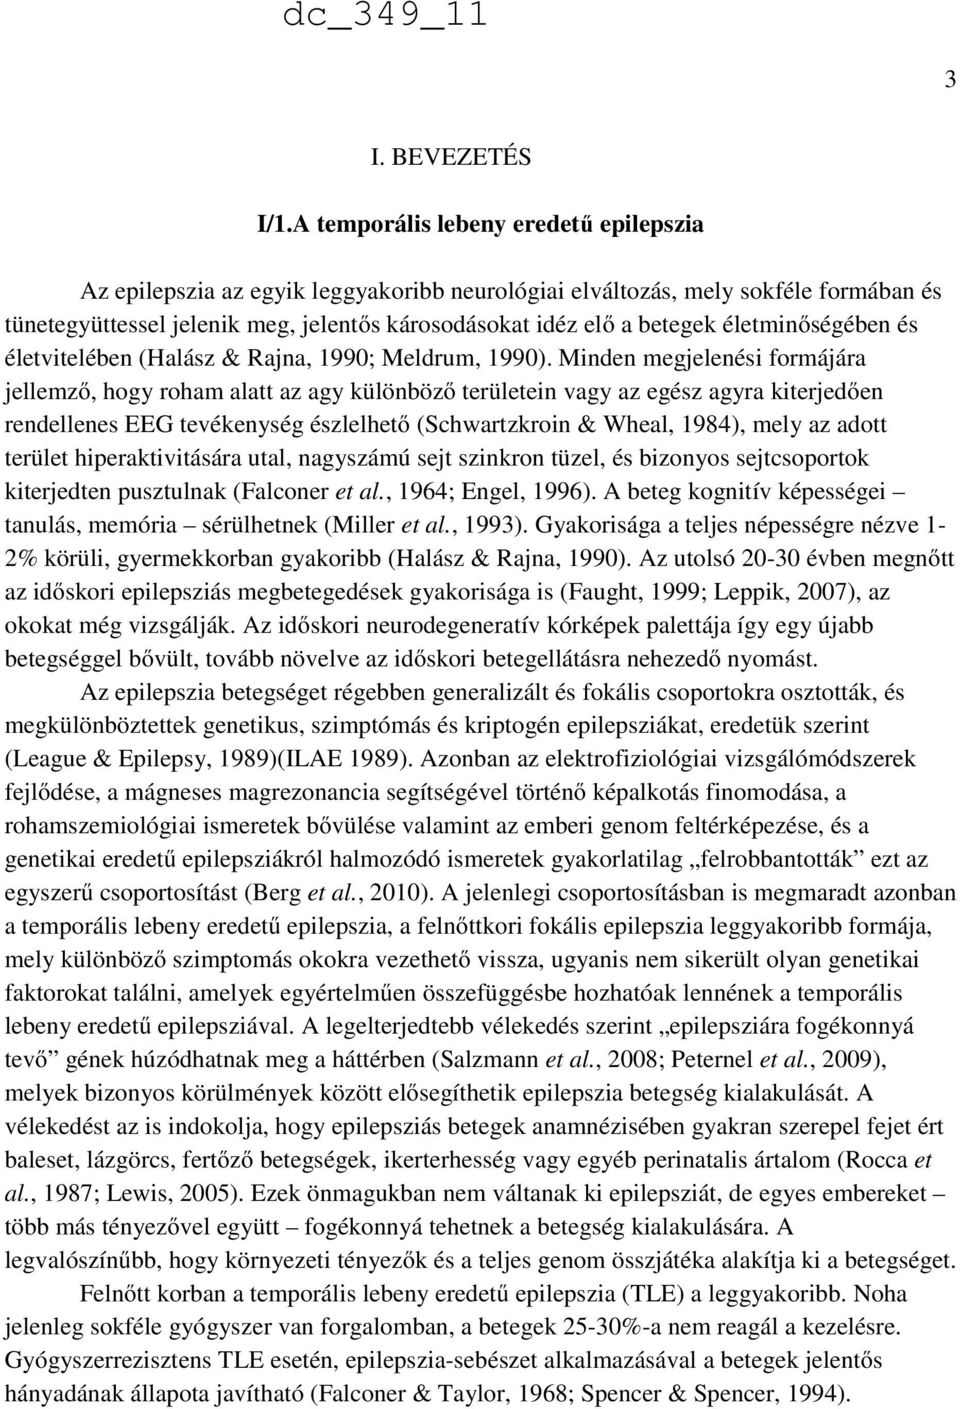 életminőségében és életvitelében (Halász & Rajna, 1990; Meldrum, 1990).